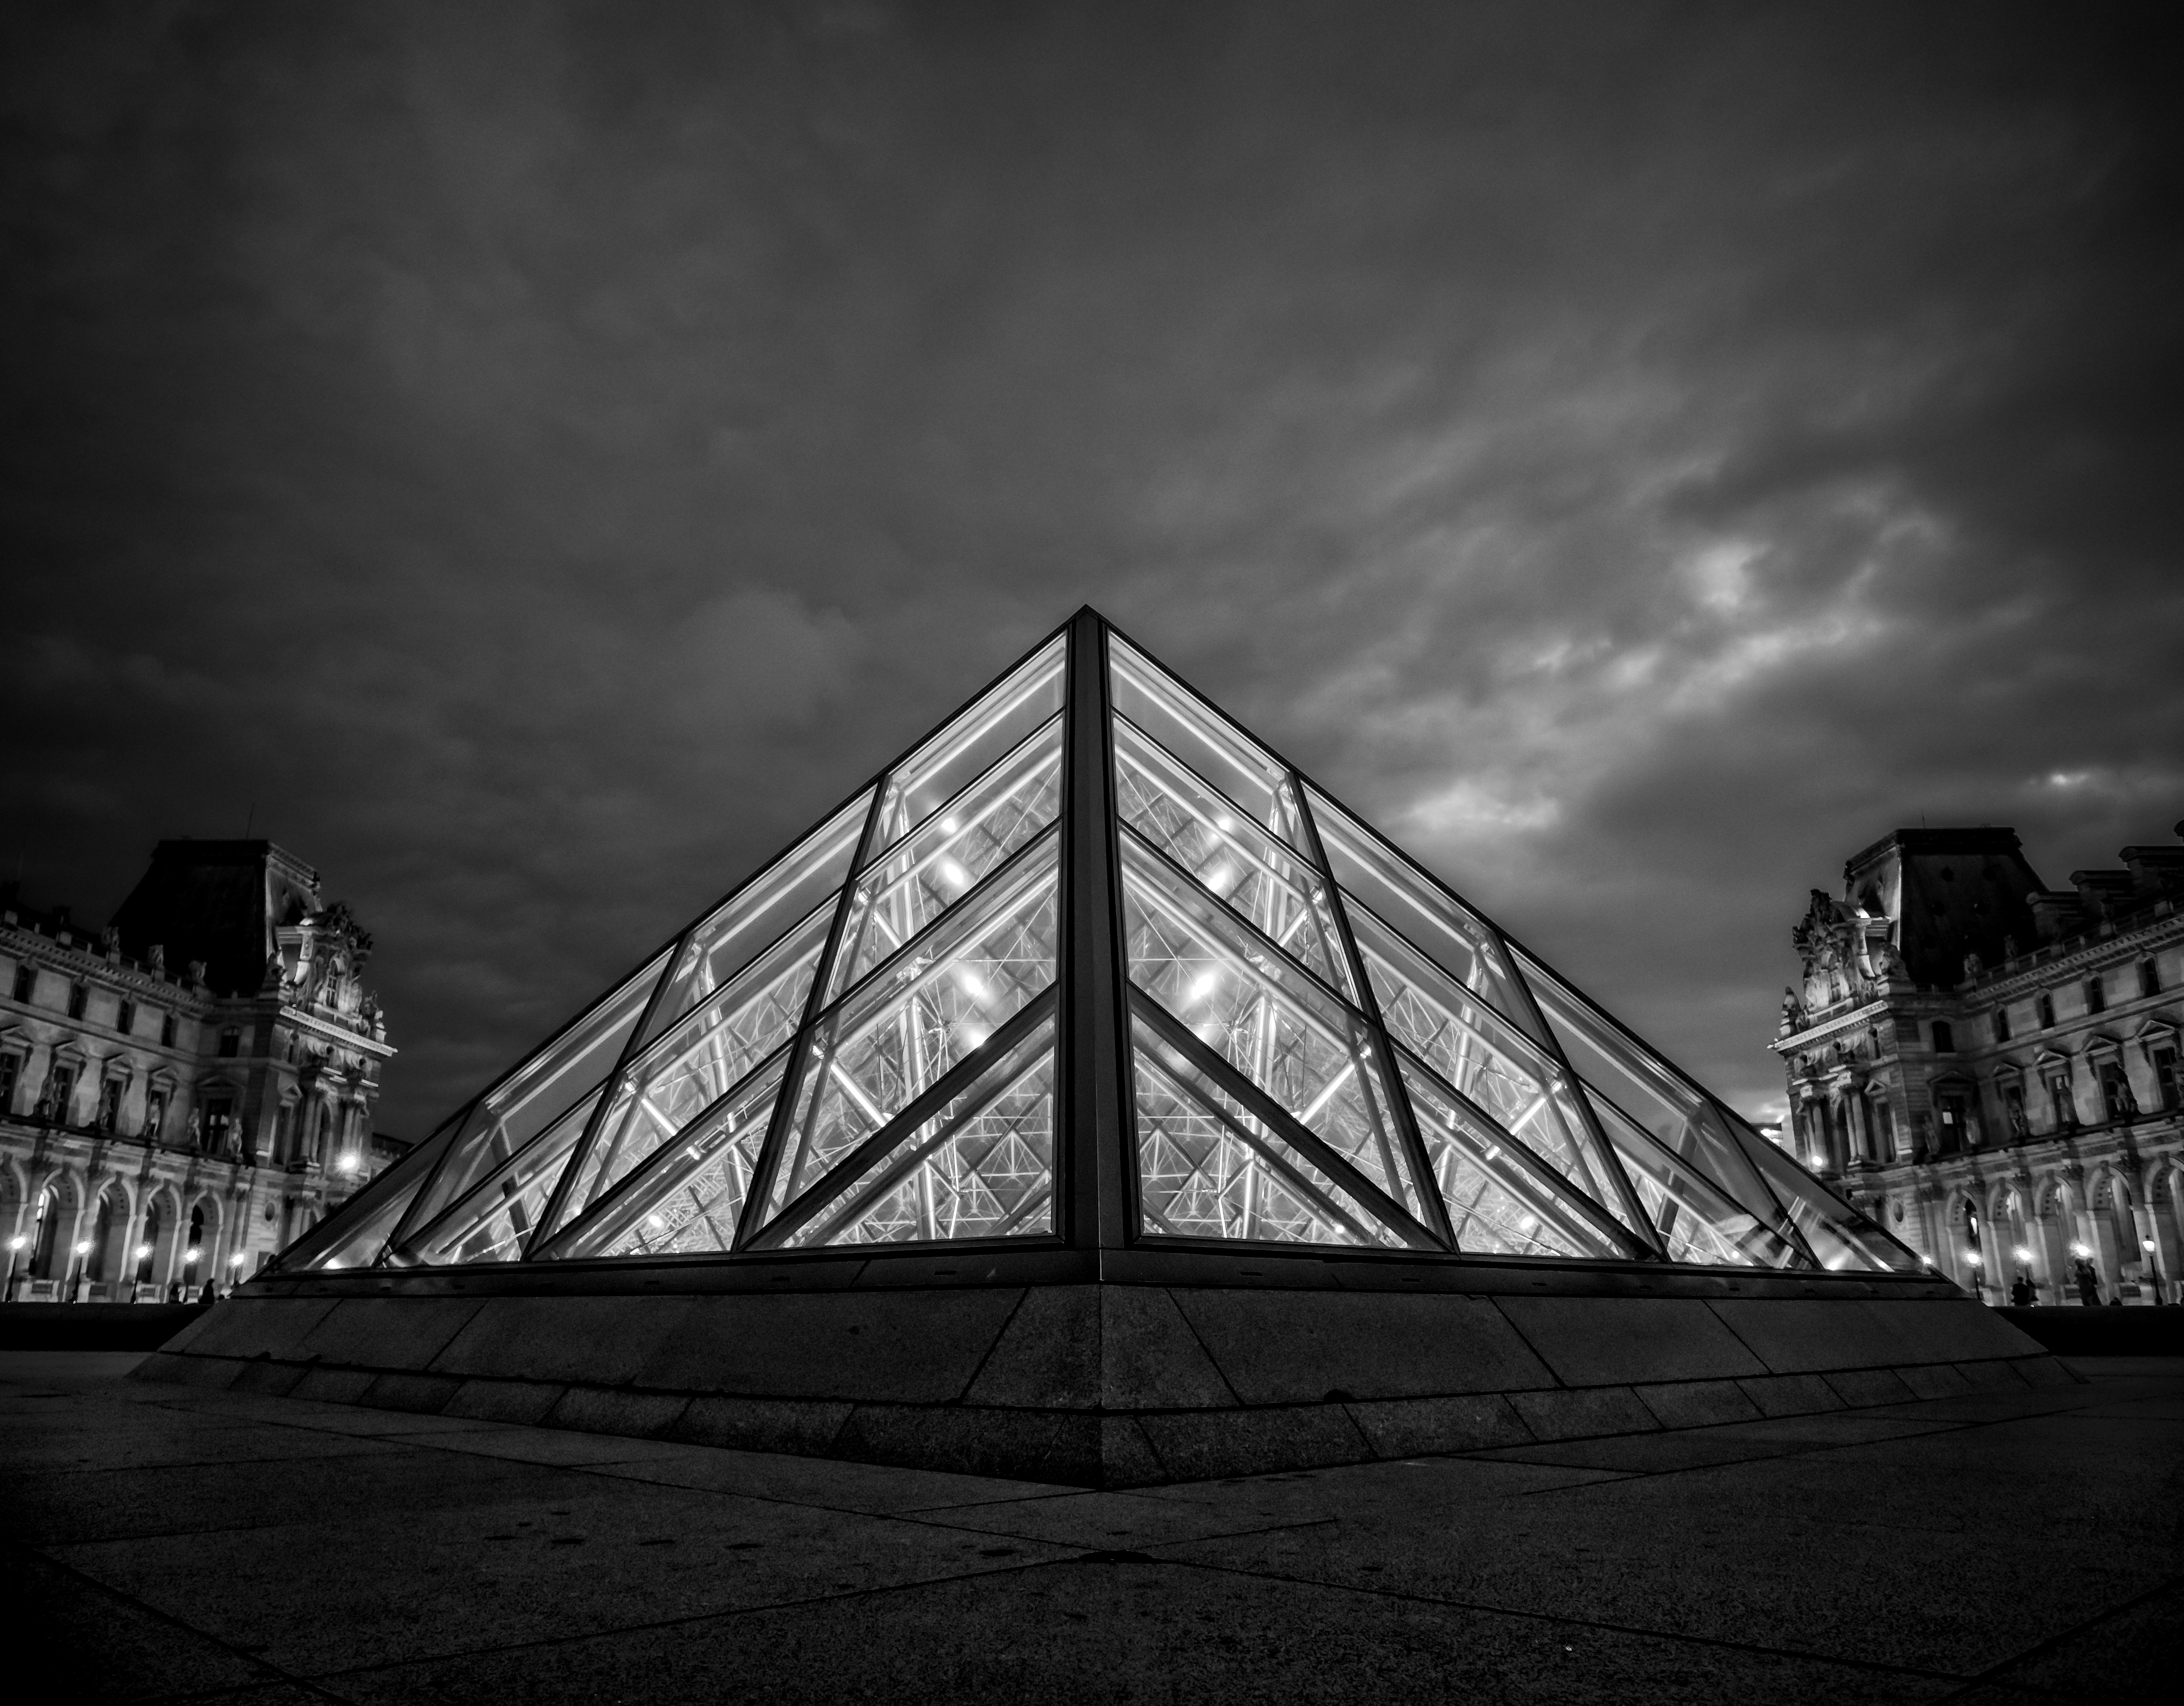 Le Louvre BW, Paris, France